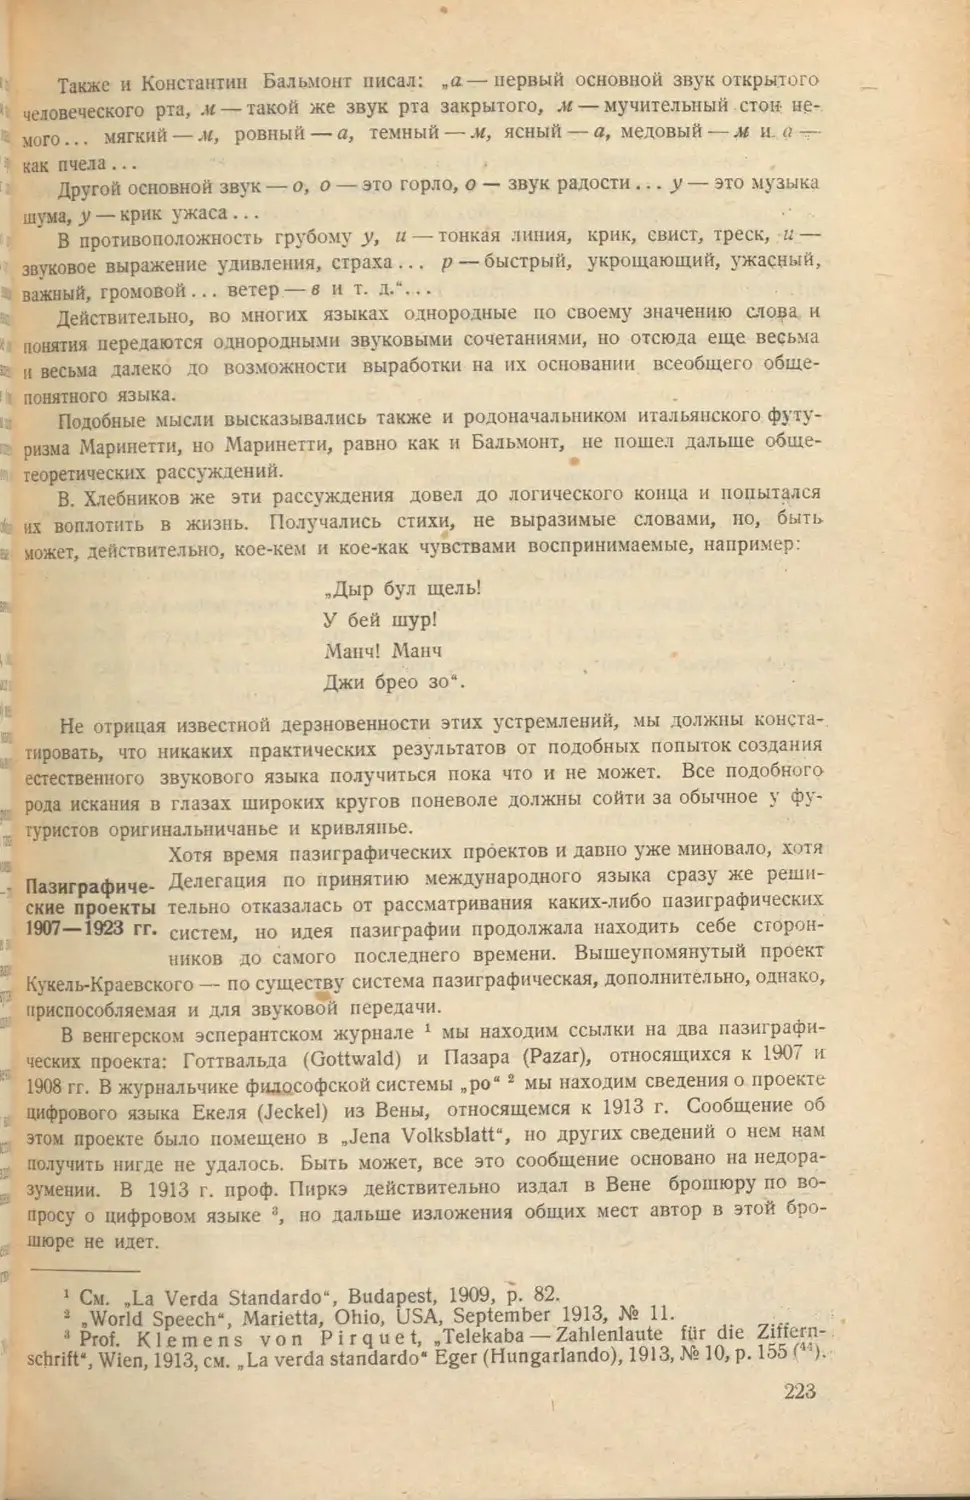 Пазиграфические проекты 1907-1923 гг